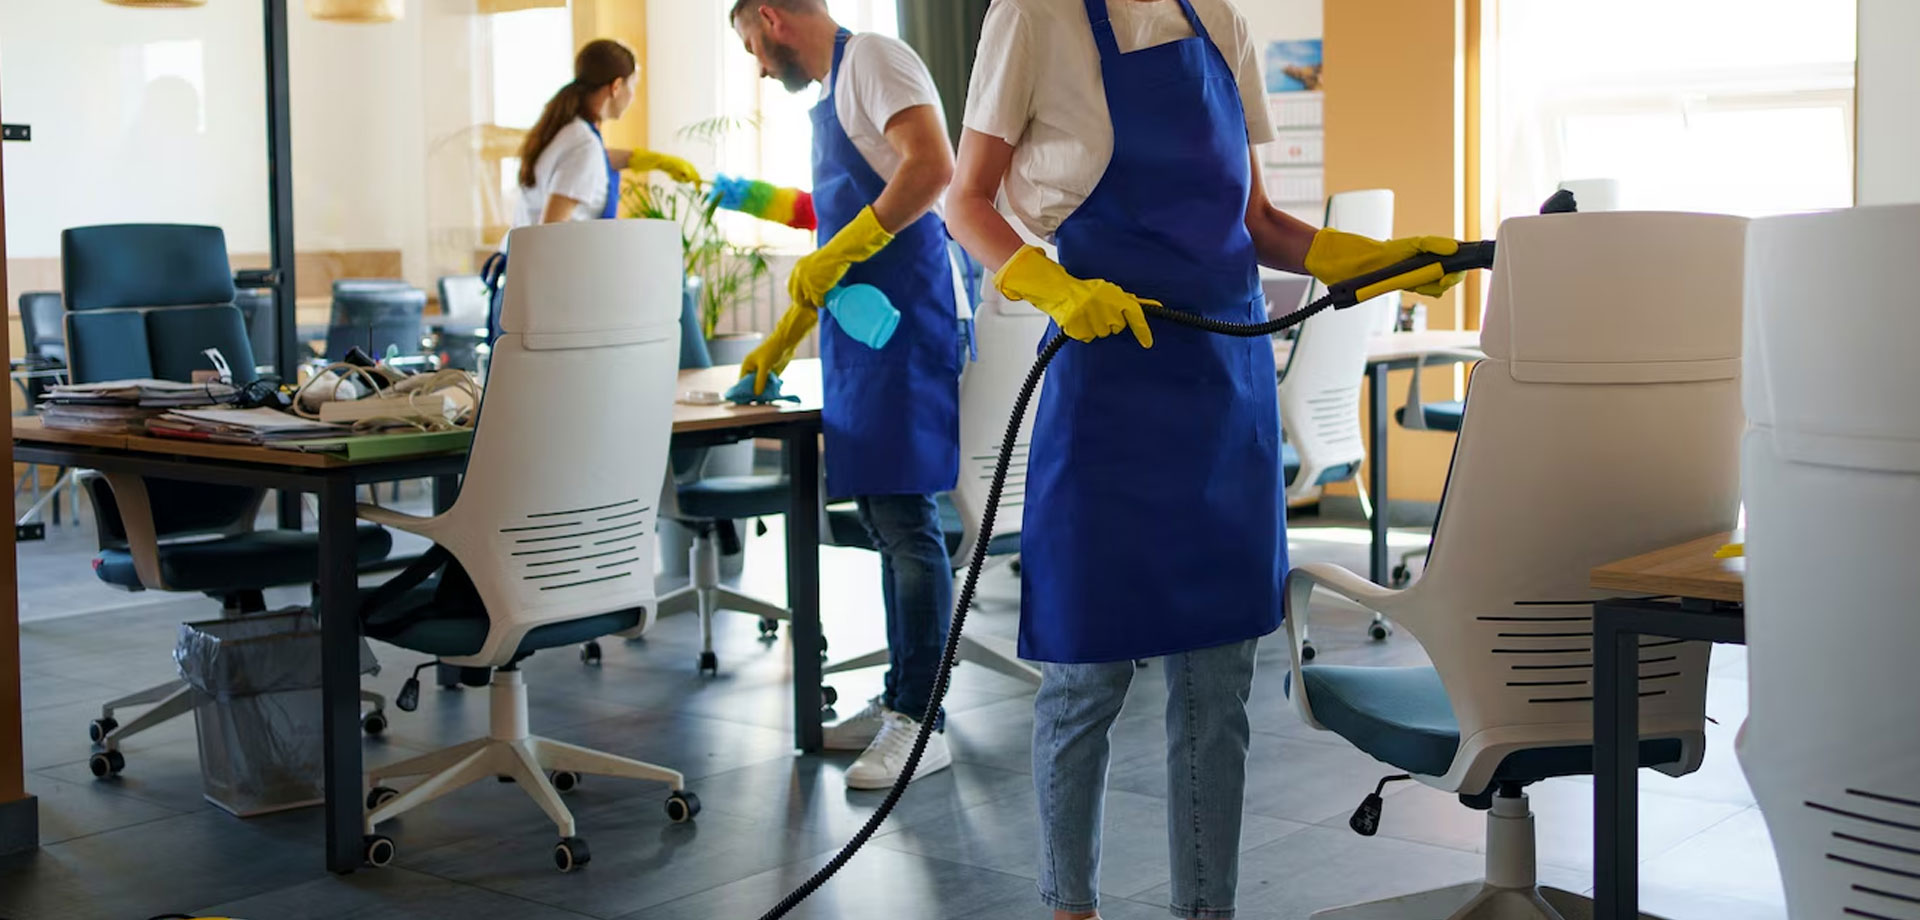 Te ofrecemos 6 consejos practicos para contratar una empresa de limpieza en Madrid